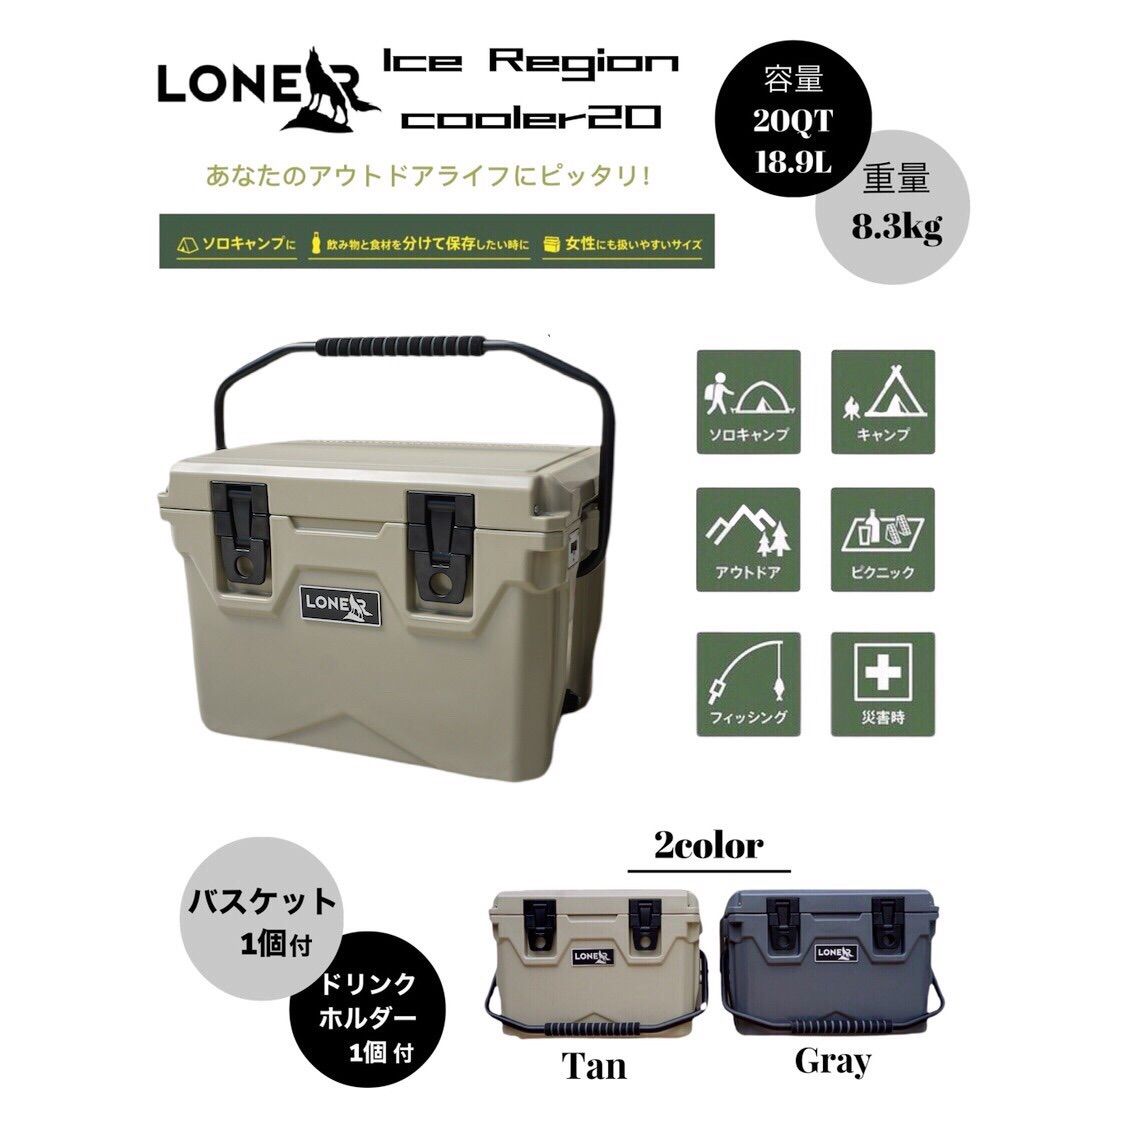 LONER】ハードクーラーボックス 20QT Gray Tan キャンプ 小型 - LONER